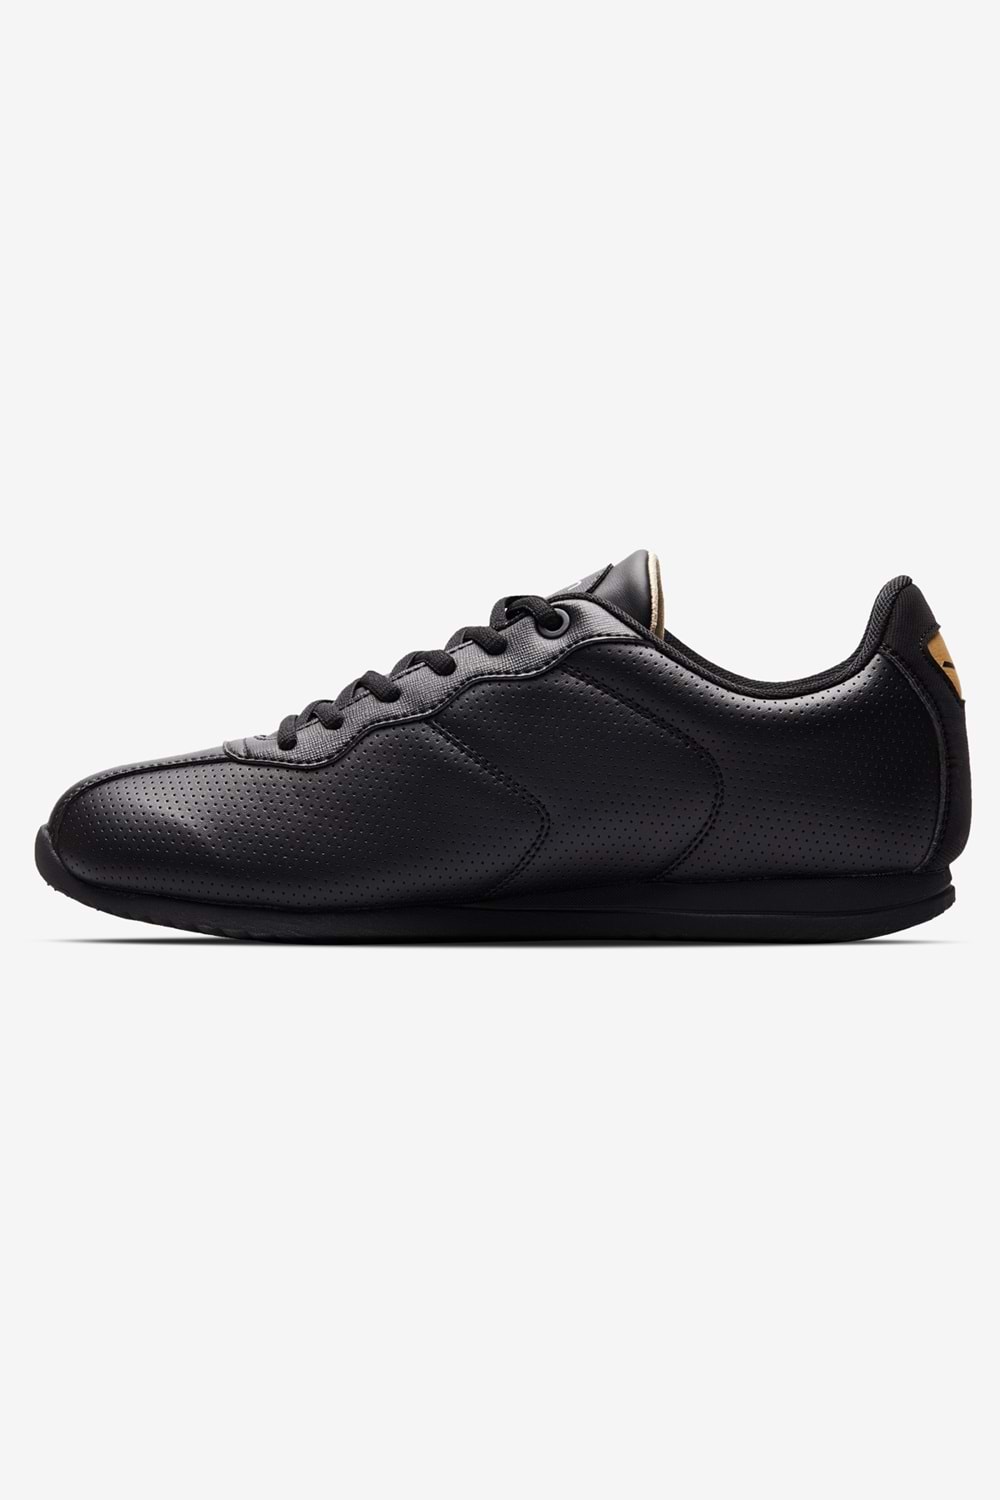 Lescon Neptun Erkek Sneakers Spor Ayakkabı - Siyah - 44